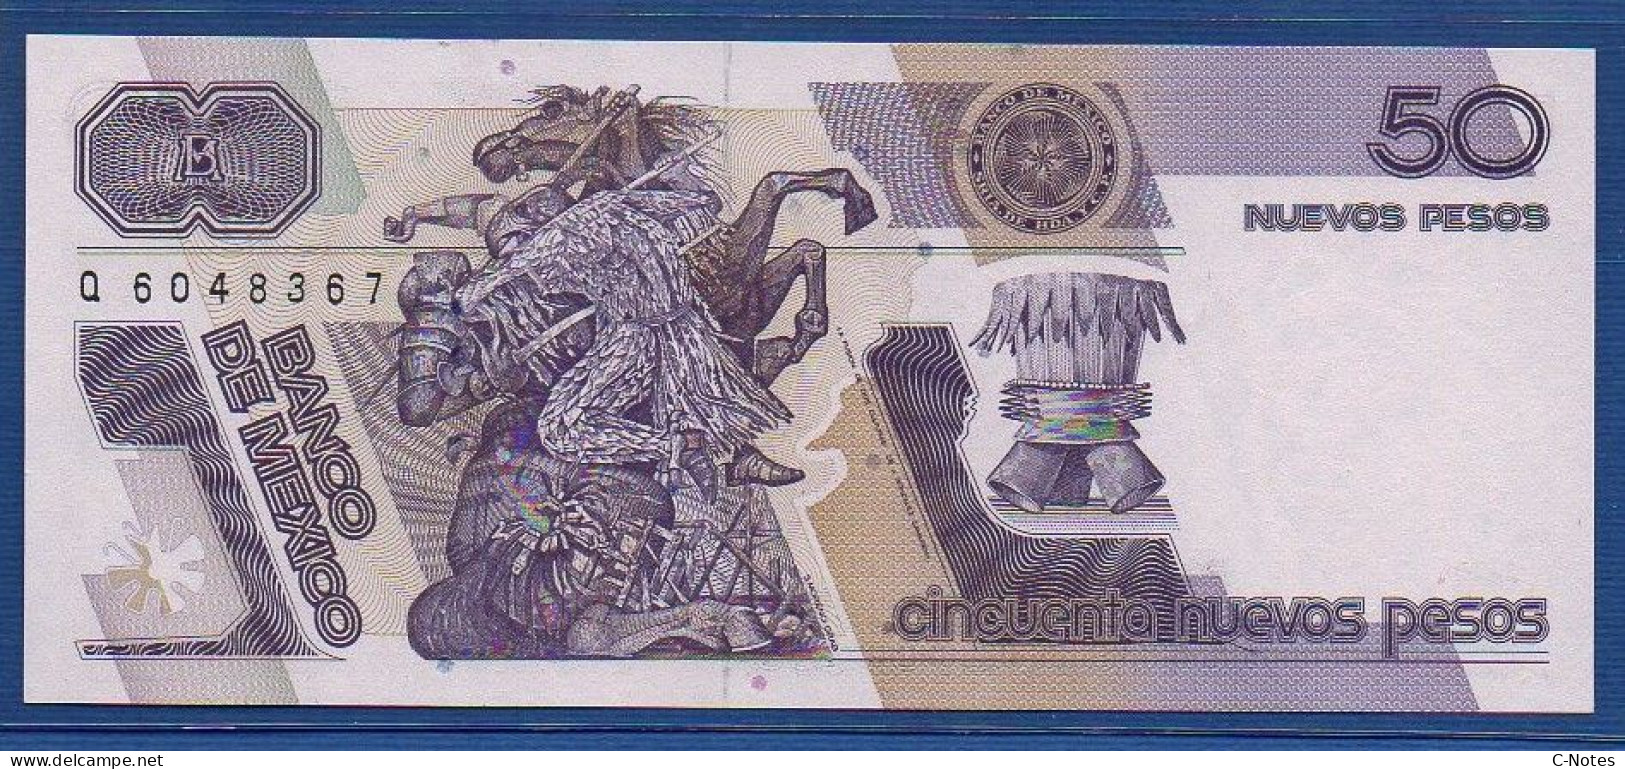 MEXICO - P. 97 – 50 Nuevos Pesos 1992 UNC, S/n H Q6048367 - Mexique